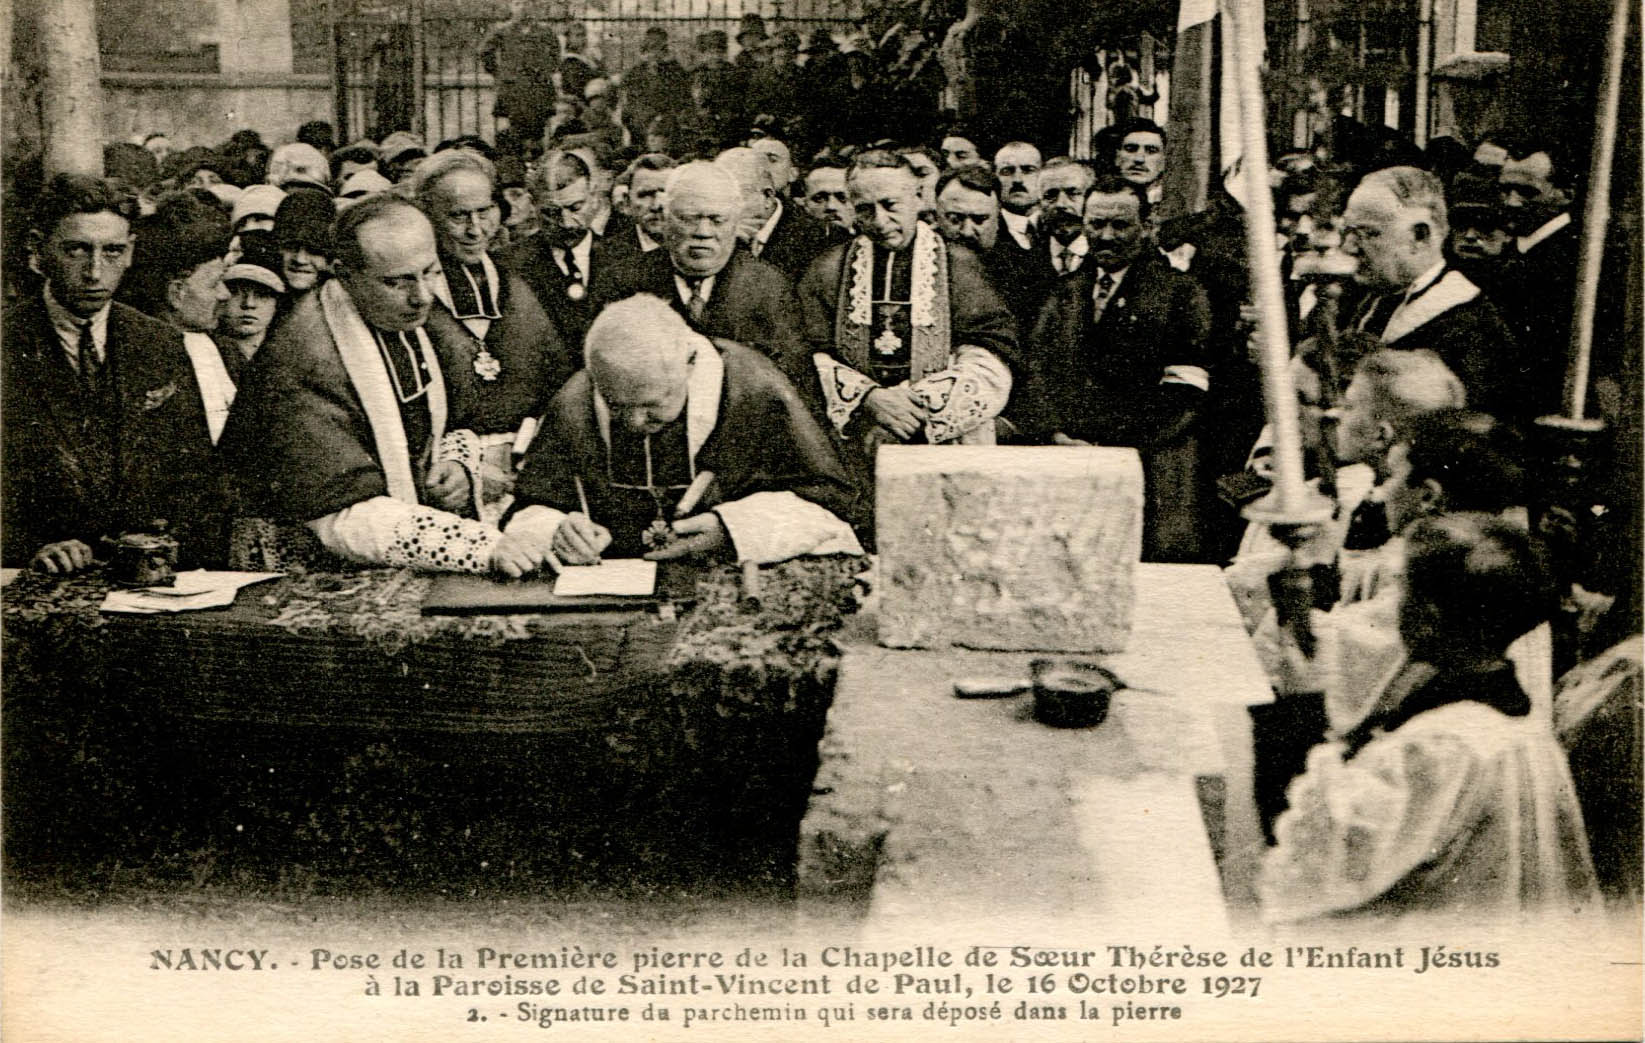 2 - Signature du parchemin